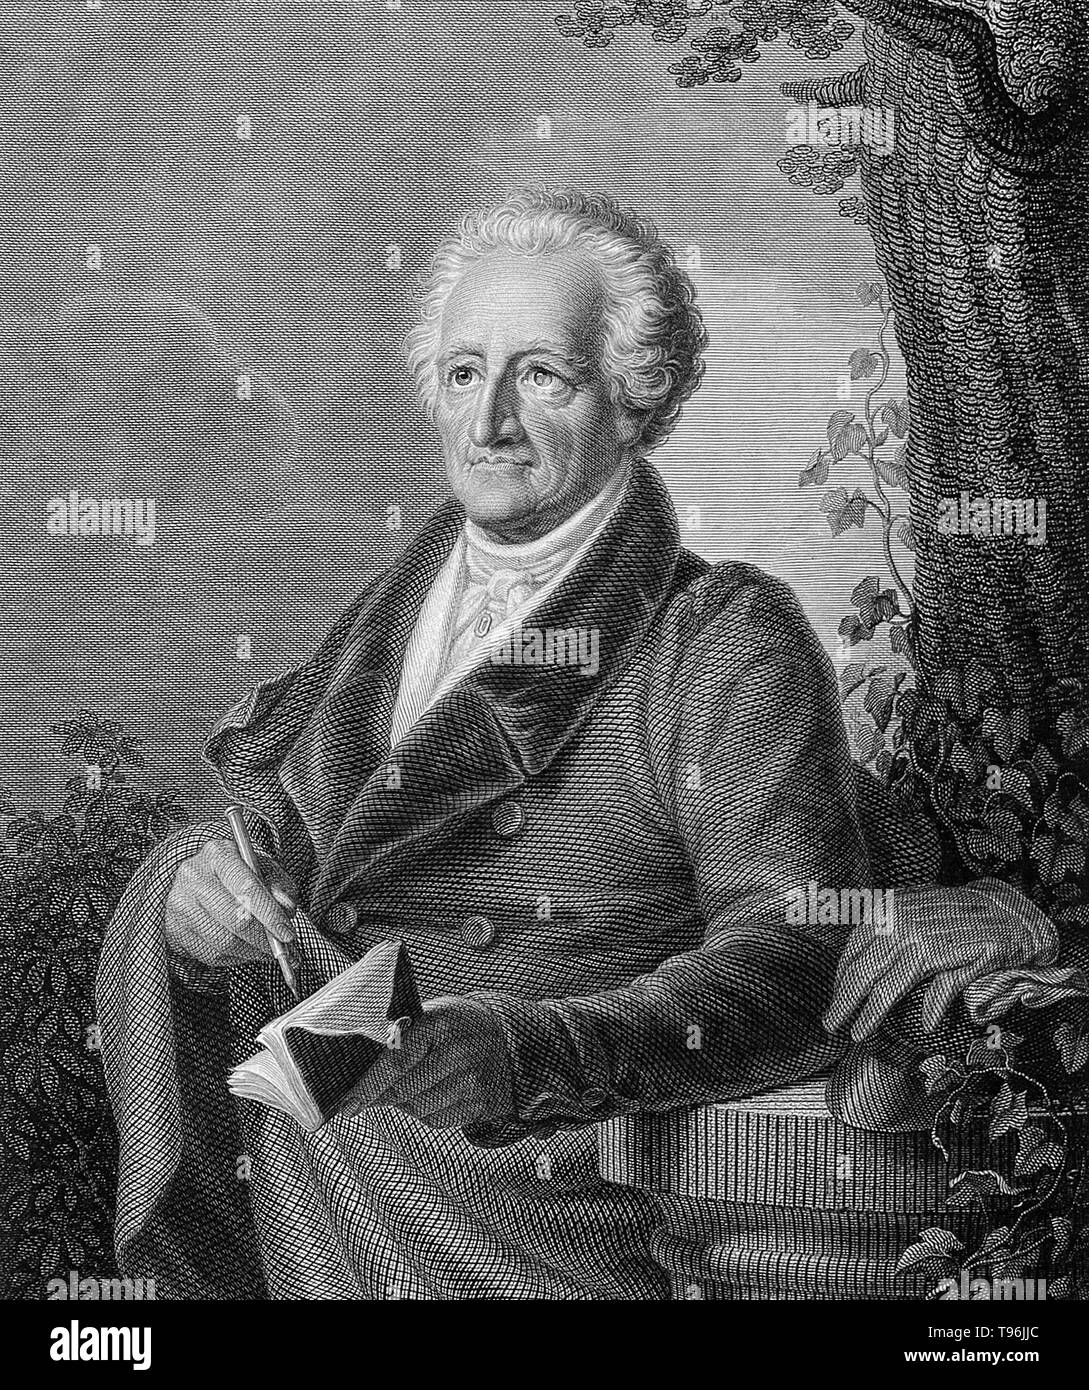 Johann Wolfgang von Goethe (28 agosto 1749 - 22 Marzo 1832) è stato uno scrittore tedesco, artista pittorico, biologo, statista, fisico teorico, e polymath. Egli è considerato il genio supremo della moderna letteratura tedesca. Le sue opere span i campi di poesia, teatro, prosa, filosofia e scienza. Il suo Faust è stato chiamato uno dei più grandi opere drammatiche di letteratura europea moderna. Foto Stock